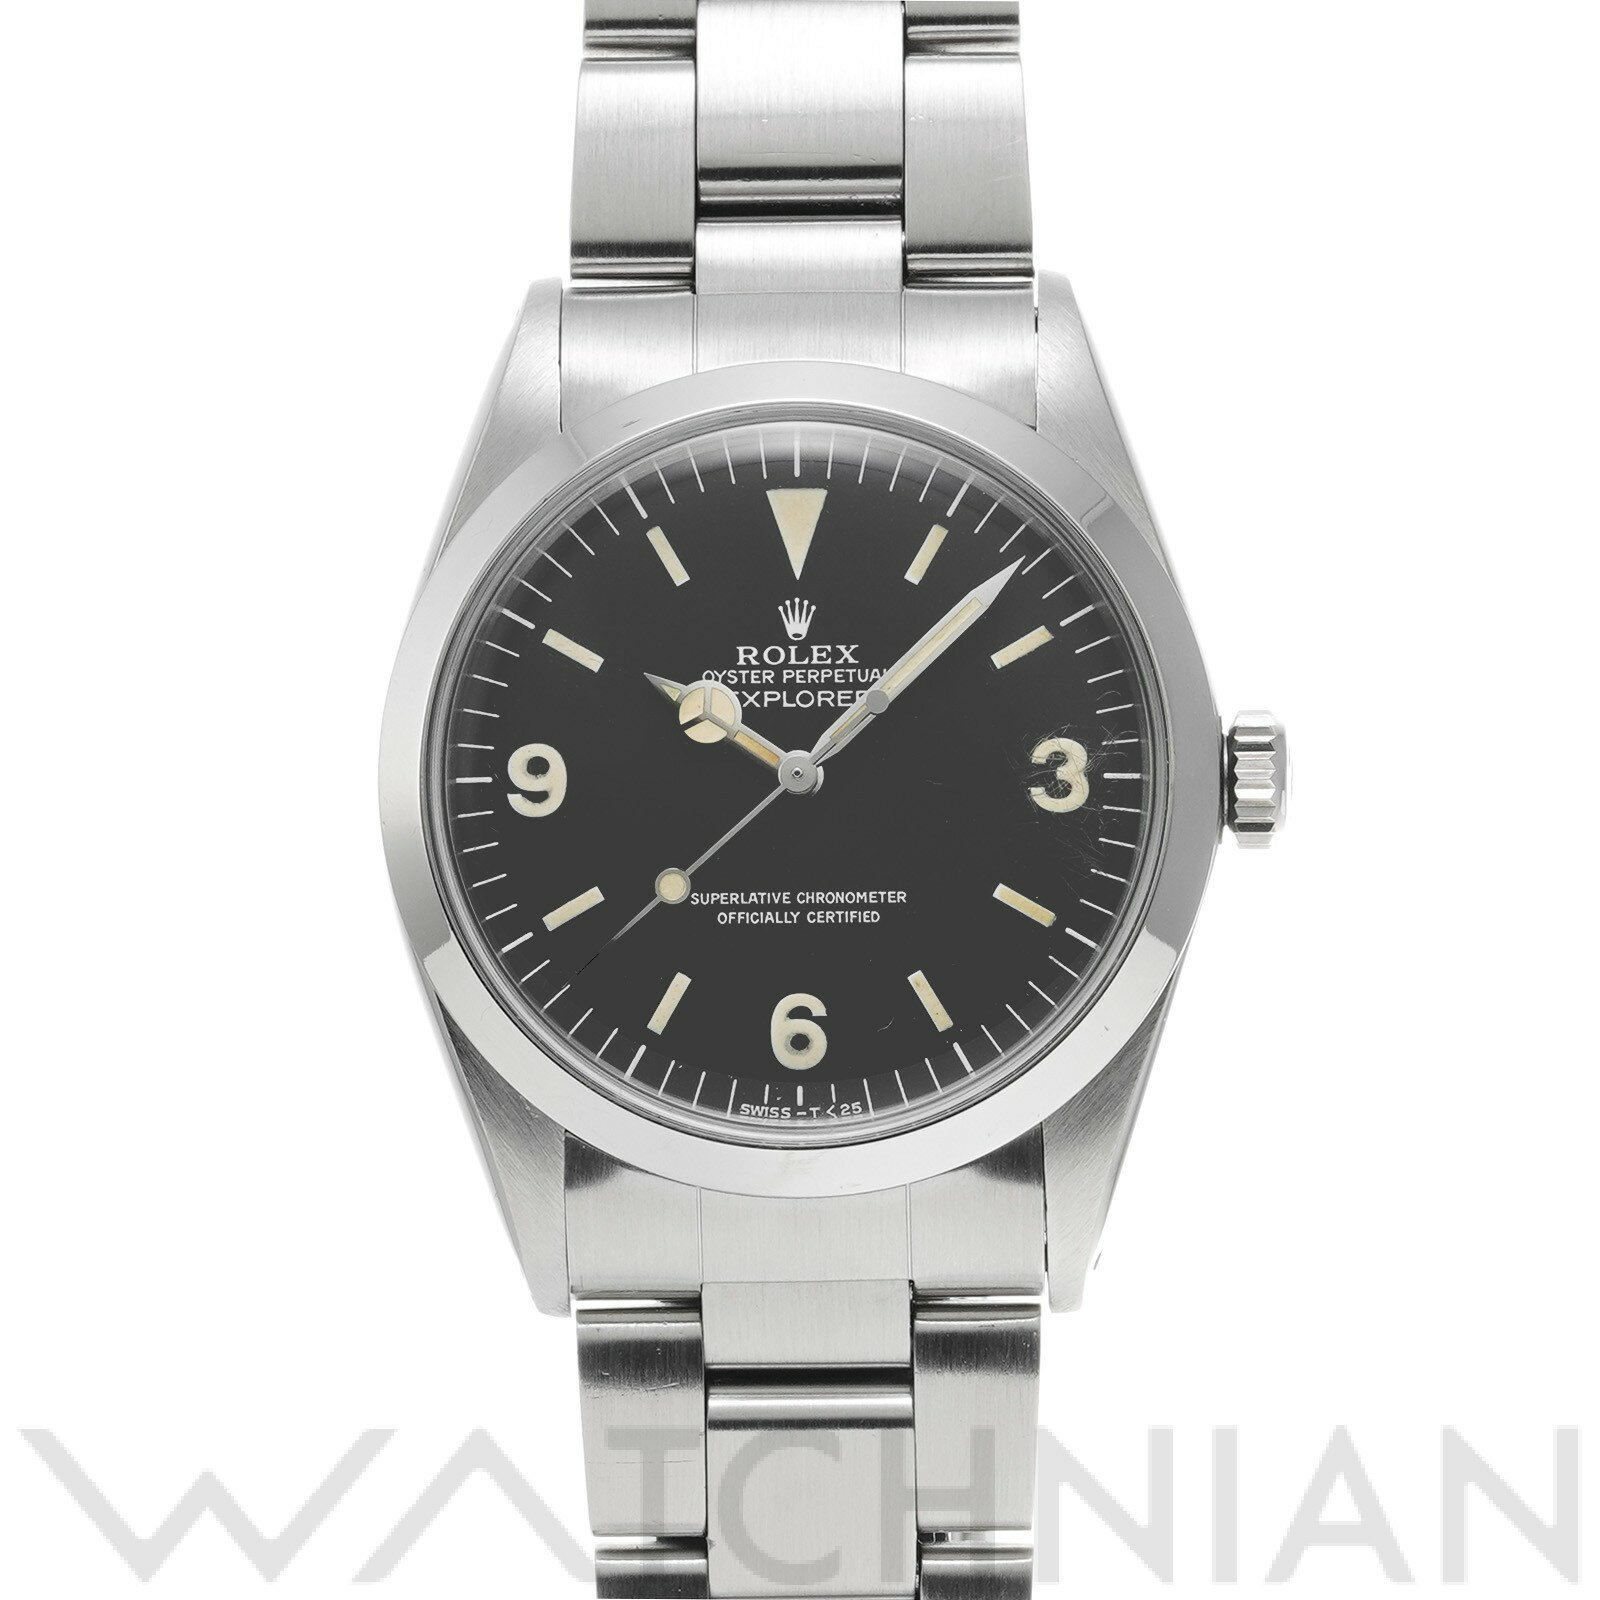 【ローン60回払い無金利】【中古】 ロレックス ROLEX エクスプローラー 1016 34番台(1973年頃製造) ブラック メンズ 腕時計 黒 ブランド ロレックス腕時計 ウォッチ 高級腕時計